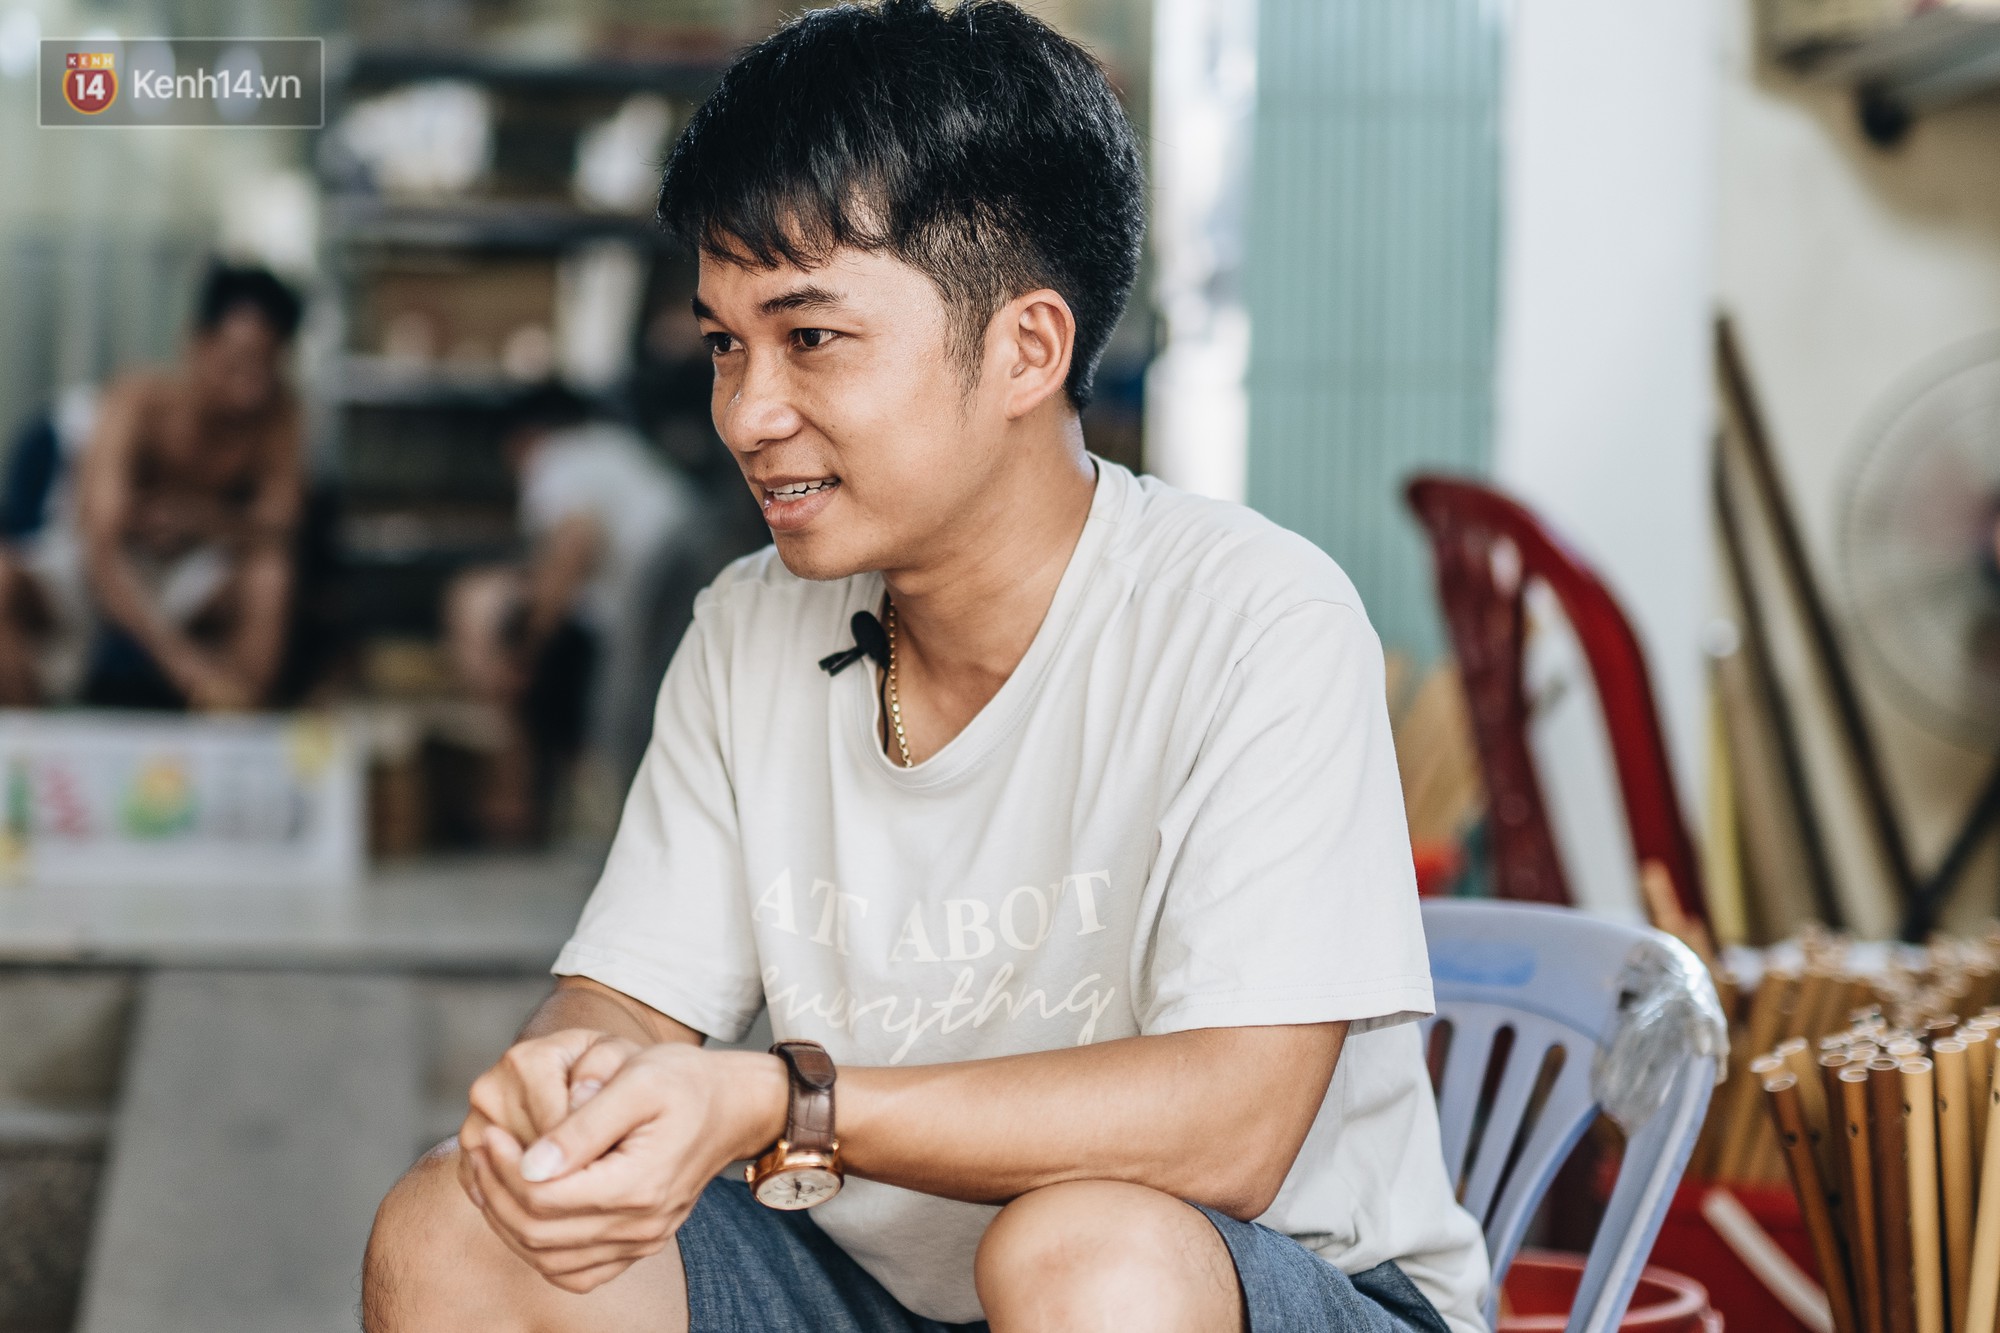 Câu chuyện thú vị về chàng trai đưa ống hút tre Việt Nam ra thế giới: Thu gần 10 tỷ đồng/tháng, 12 năm miệt mài thi ĐH vì đam mê - Ảnh 13.